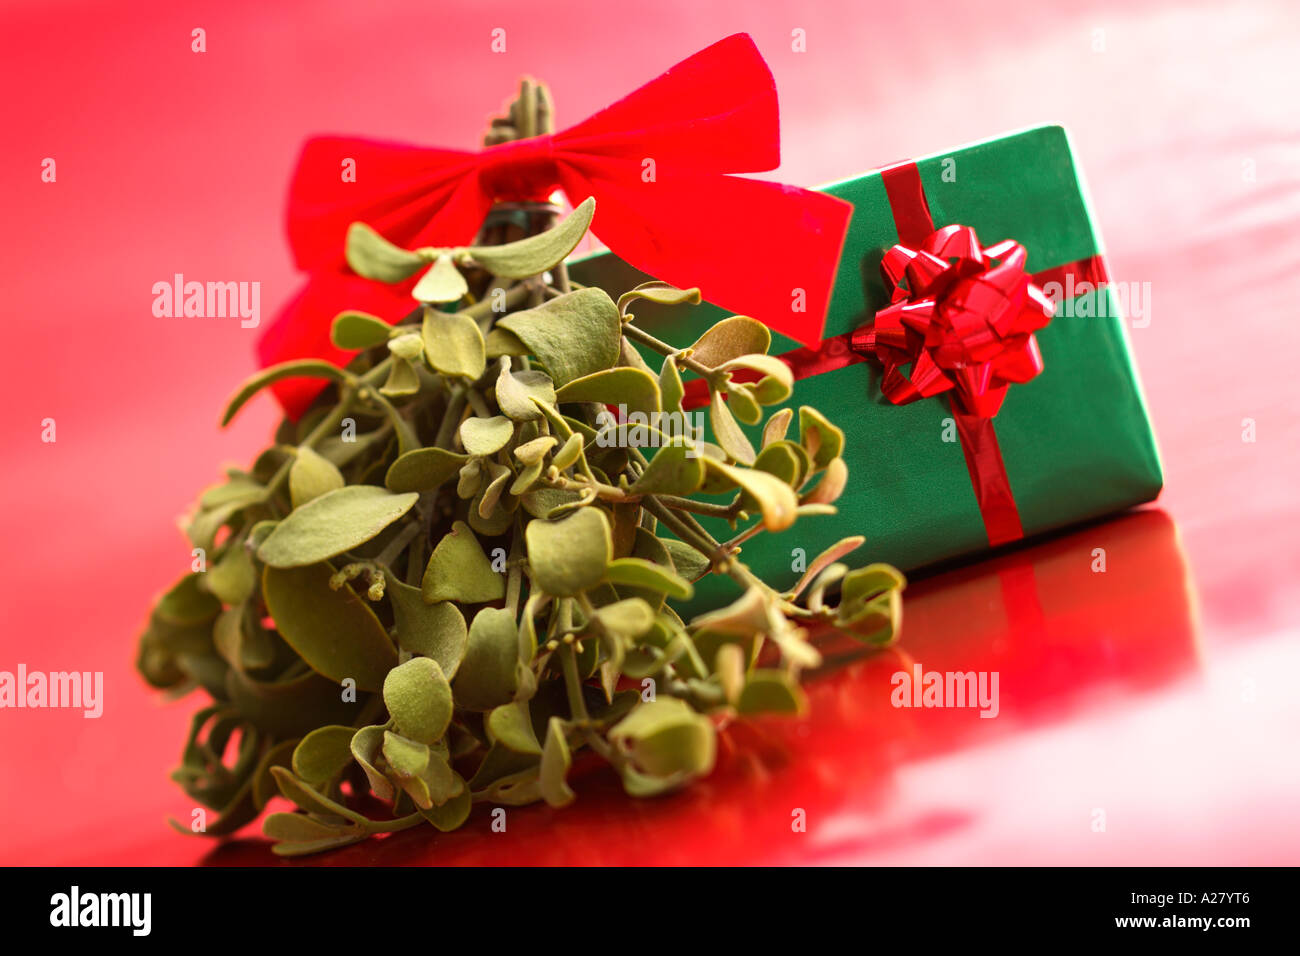 Mistel und Weihnachten Geschenk auf rotem Grund. Stockfoto